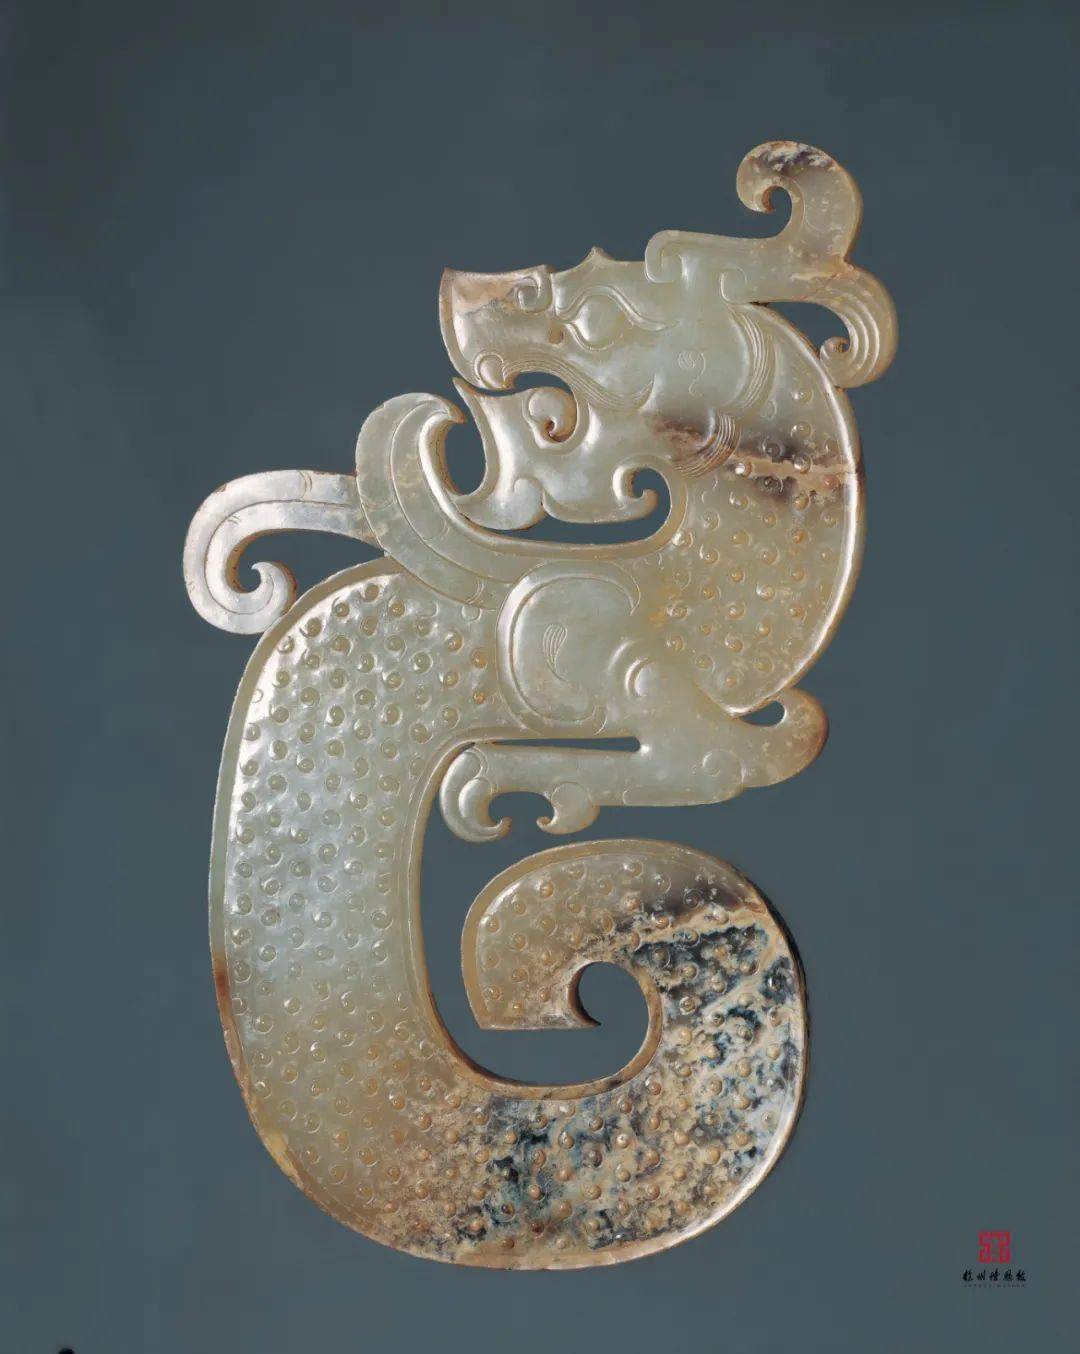 揭秘汉代皇家宝藏!徐州博物馆悄悄公布超10000件馆藏文物高清照片